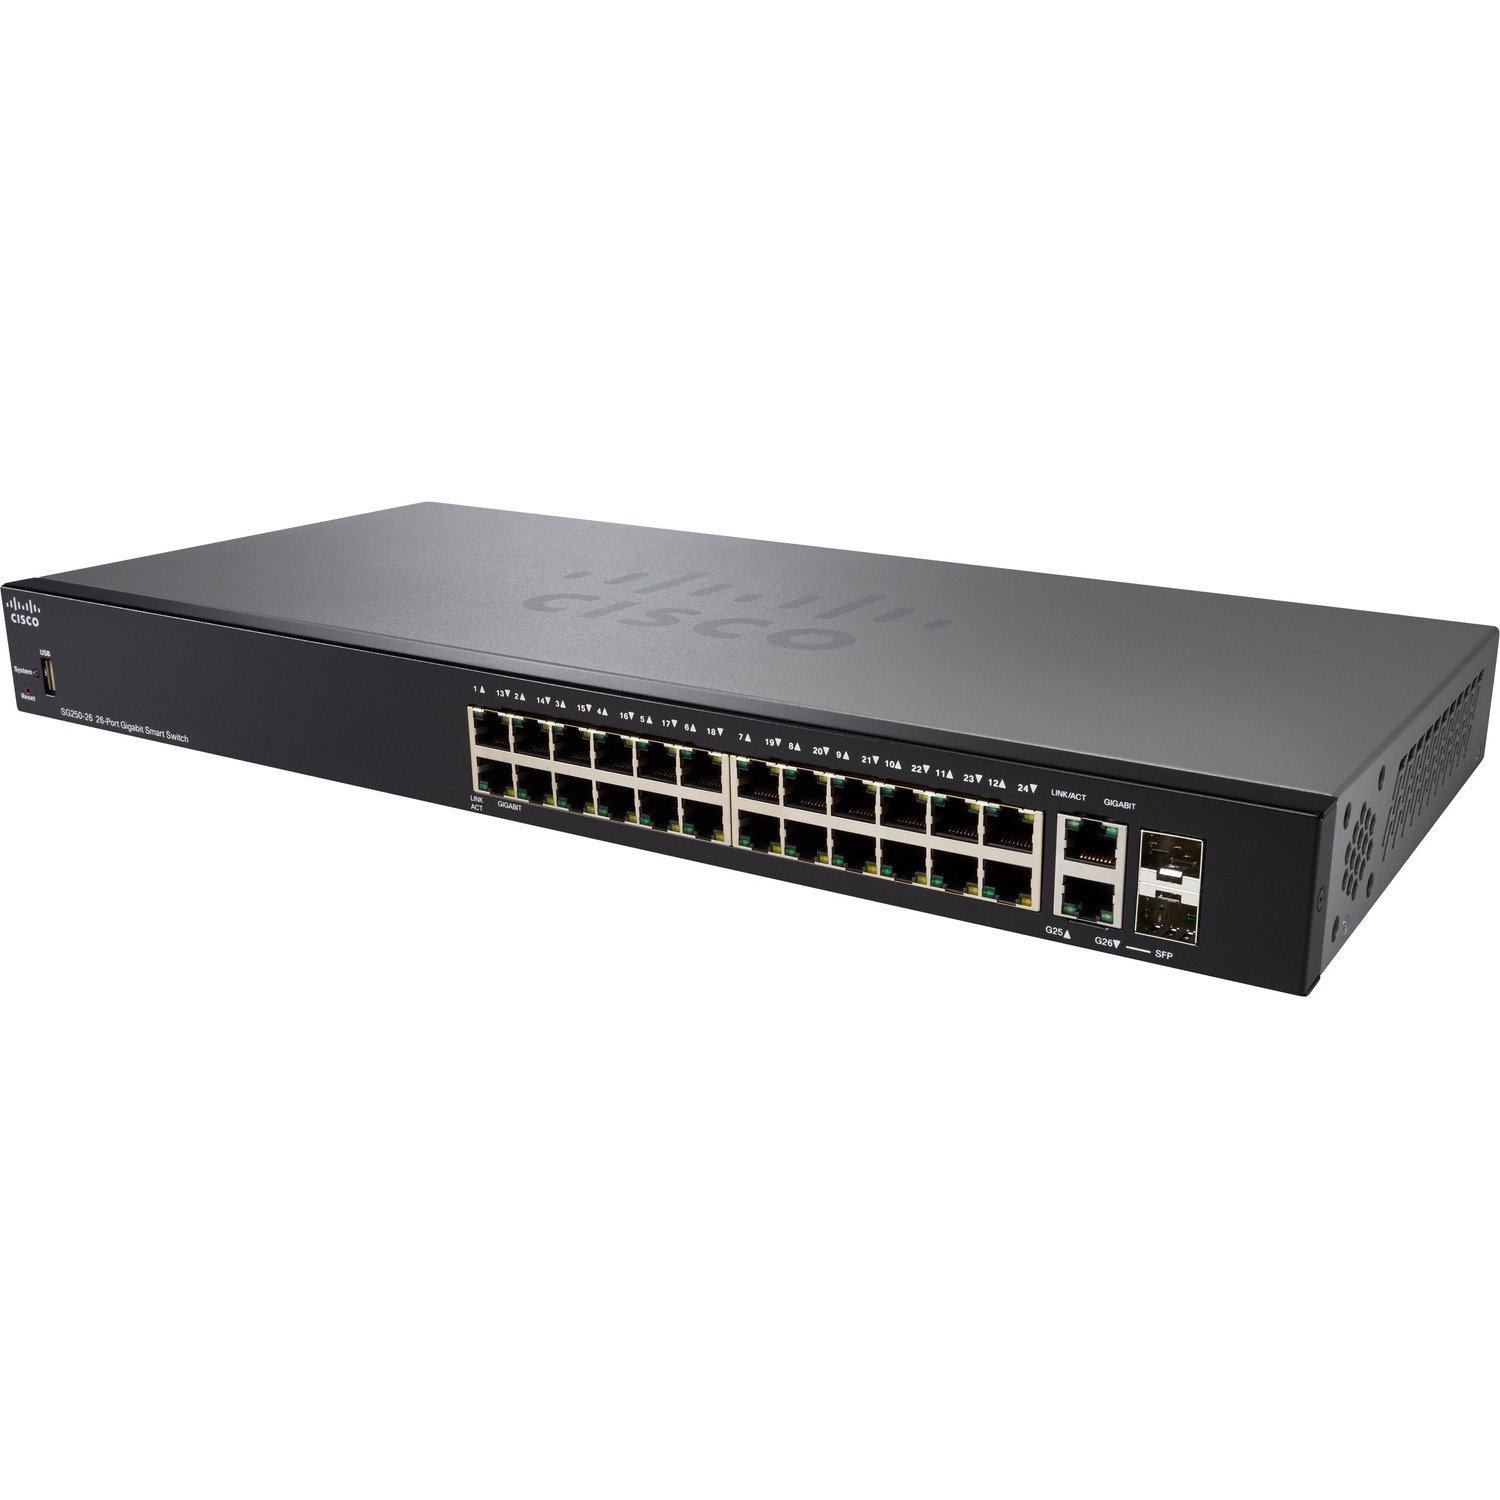 Cisco 250 SG250-26P 26 Ports Manageable Ethernet Switch - Gigabit Ethernet - 1000Base-T, 1000Base-X